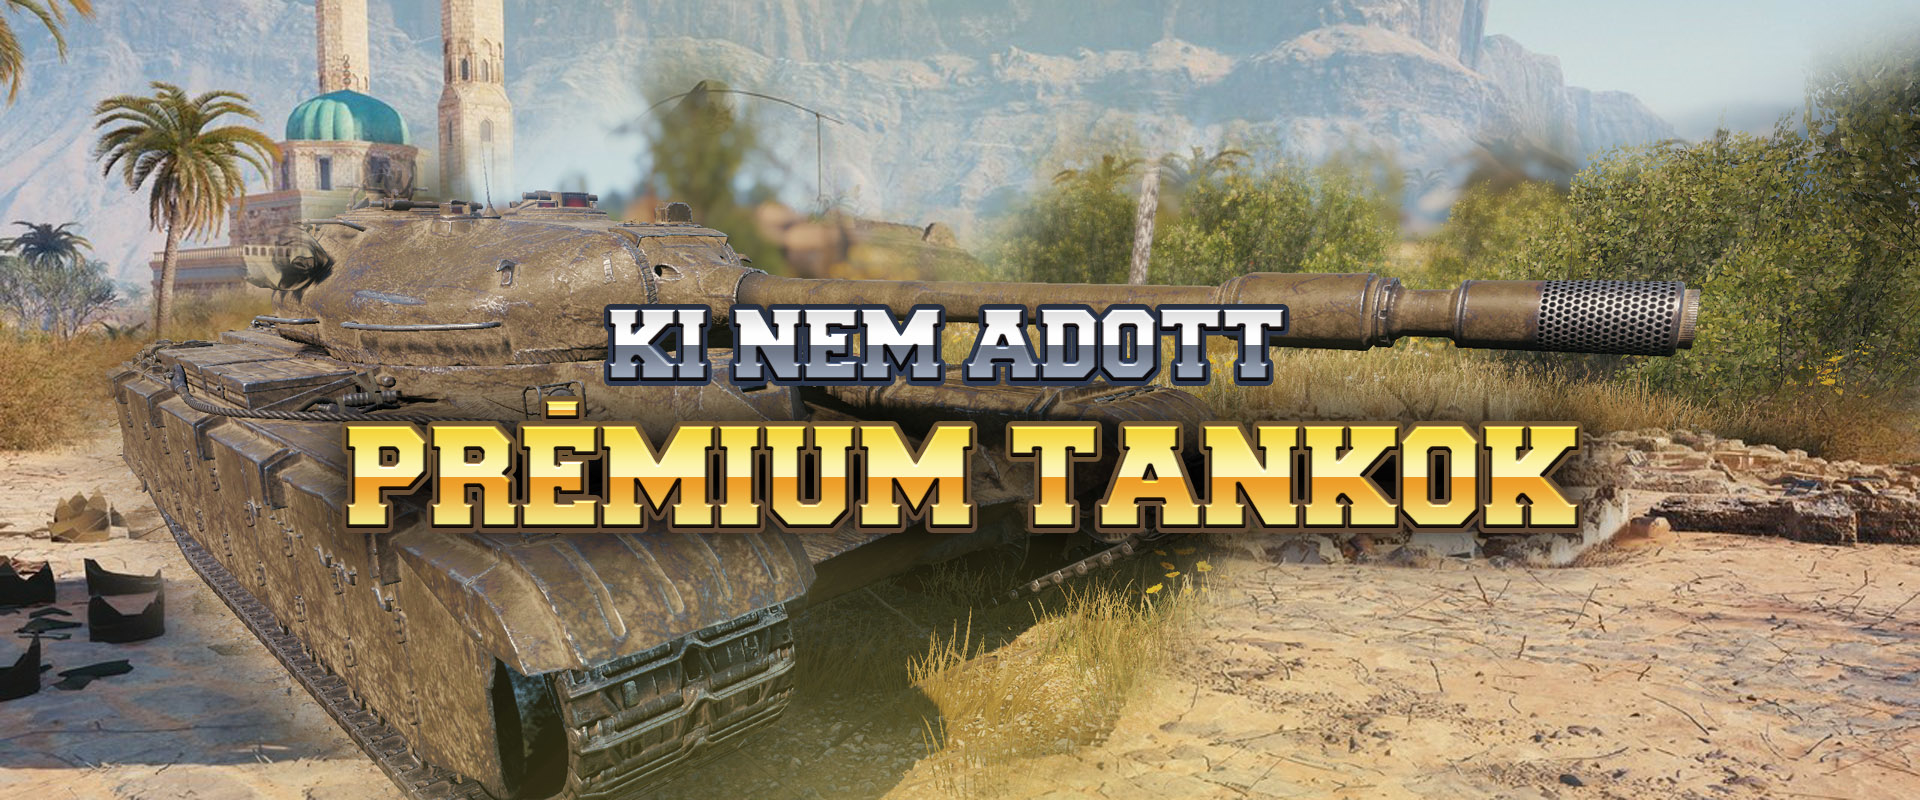 Ezek a prémium tankok már a spájzban vannak!